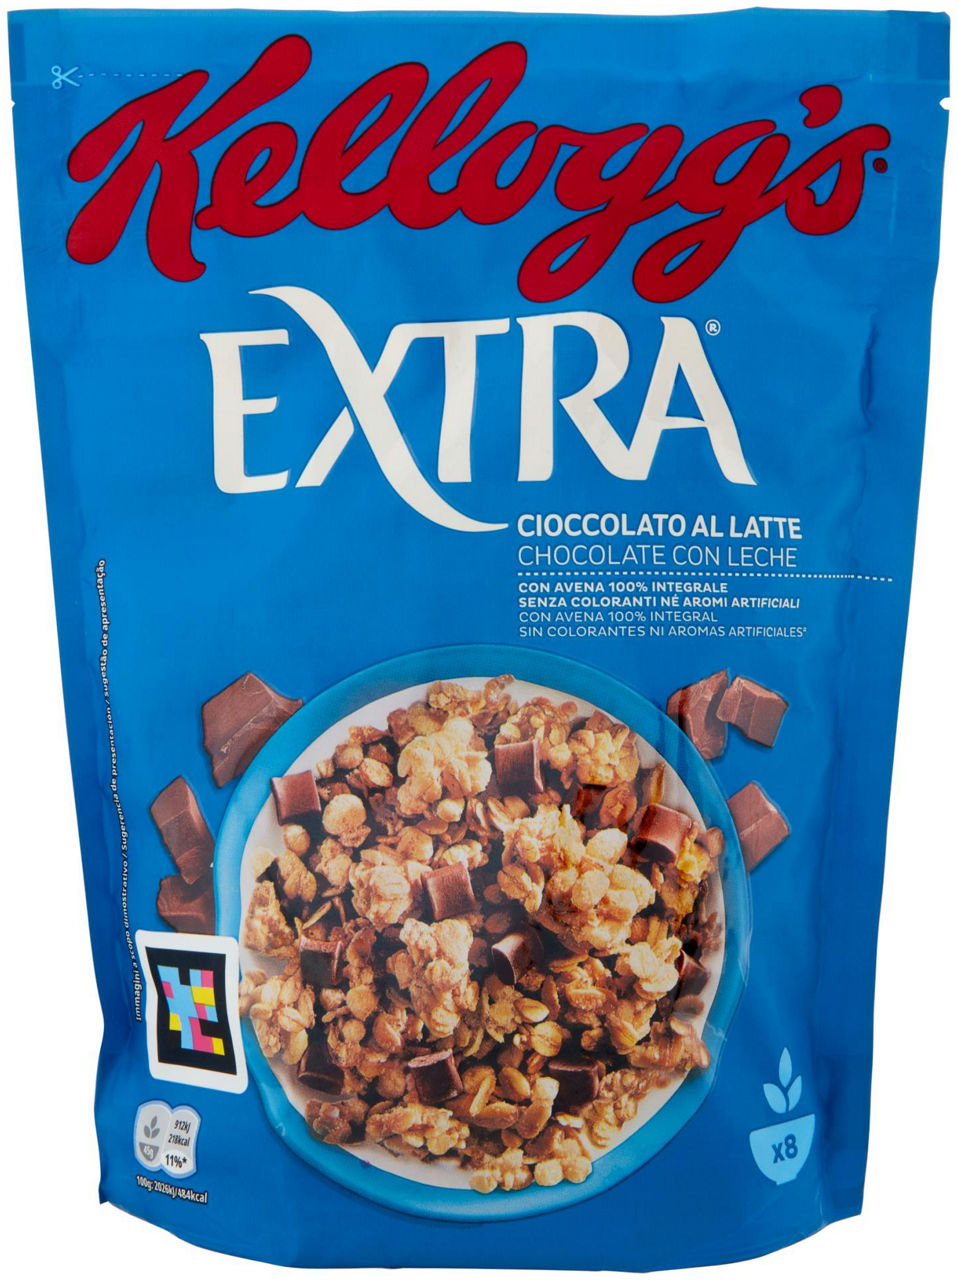 Cereali cioccolato al latte kellogg's extra scatola g 375